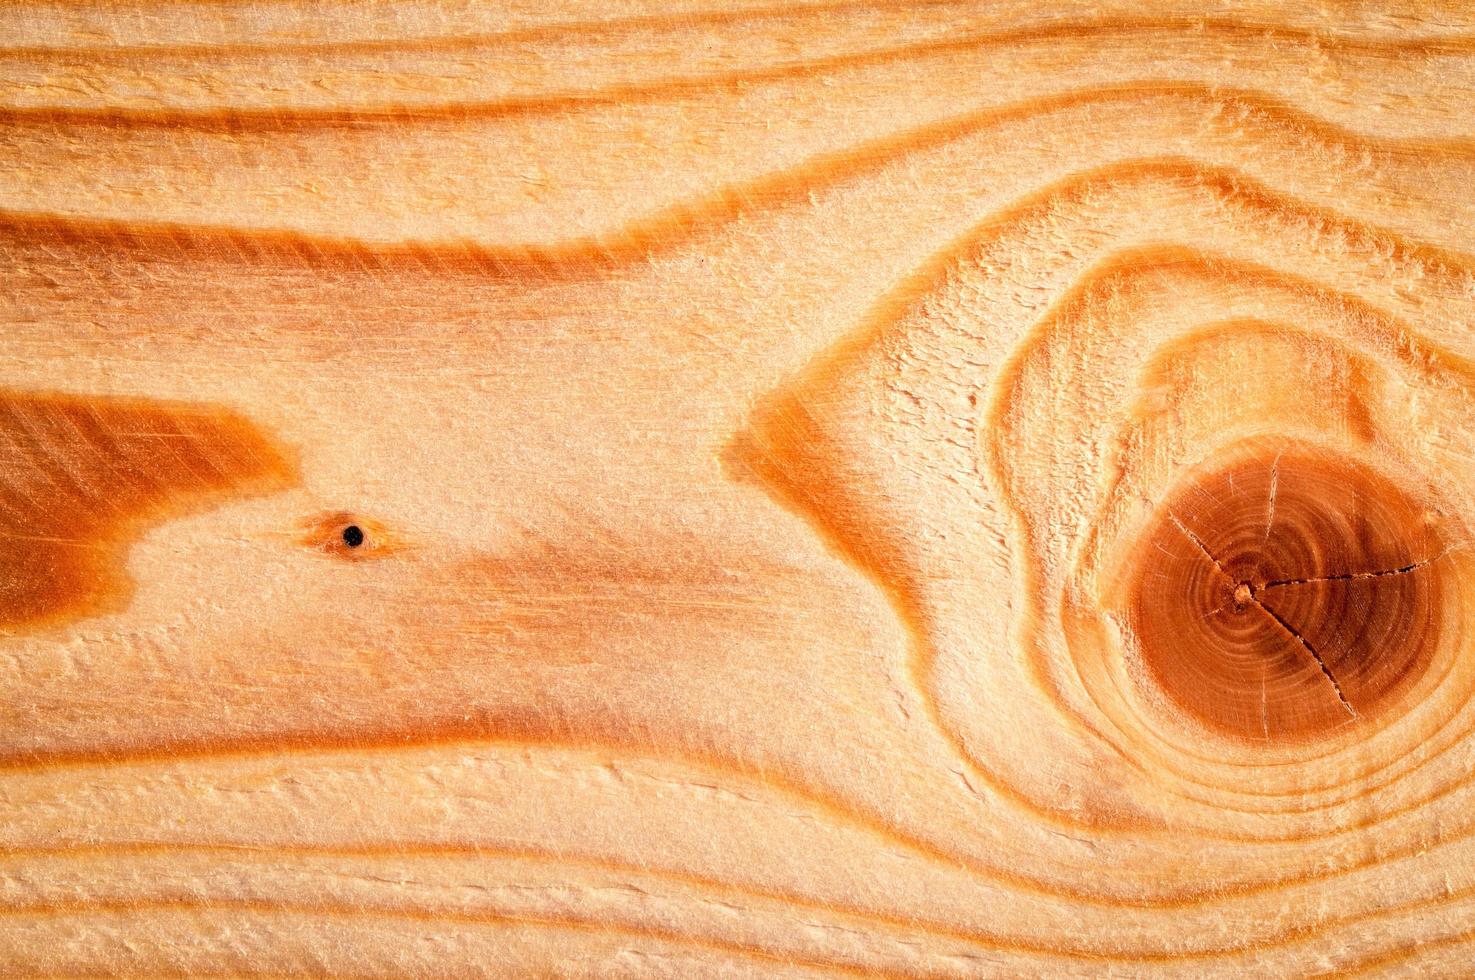 Detalle de anillos de árboles y nudos en madera foto